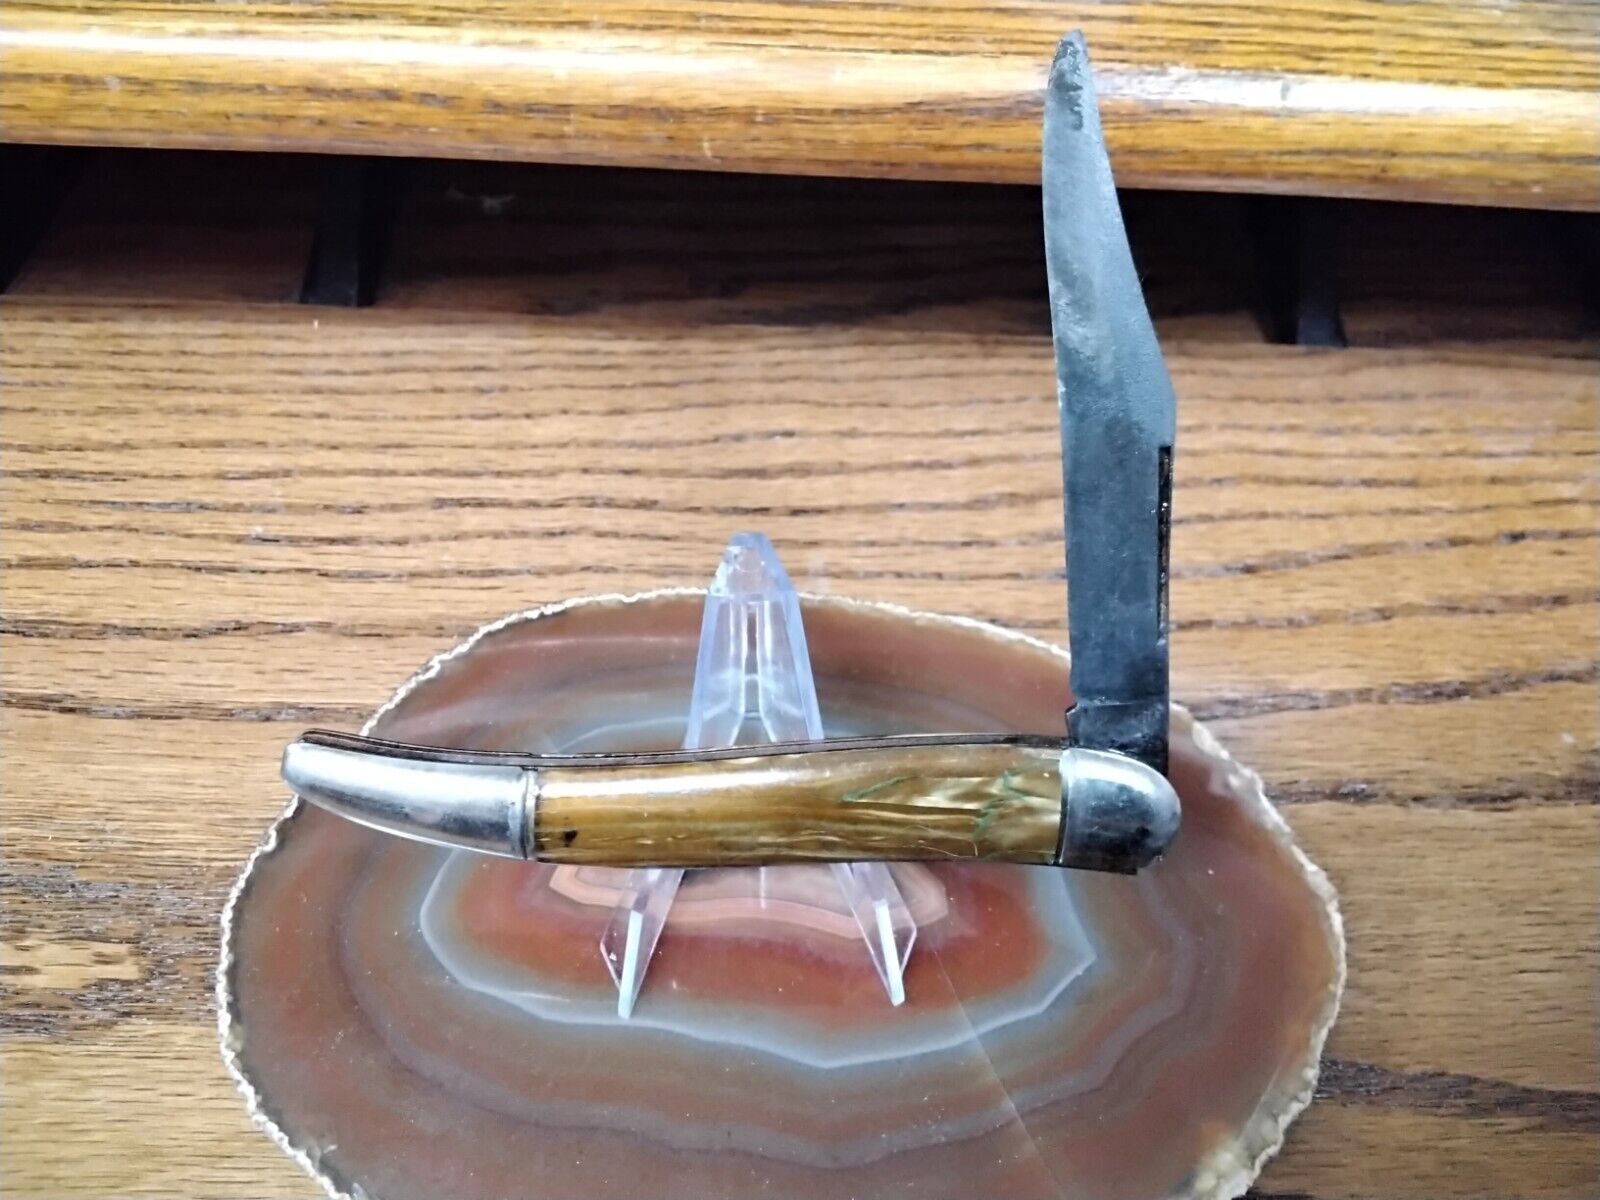 vintage pocket knife